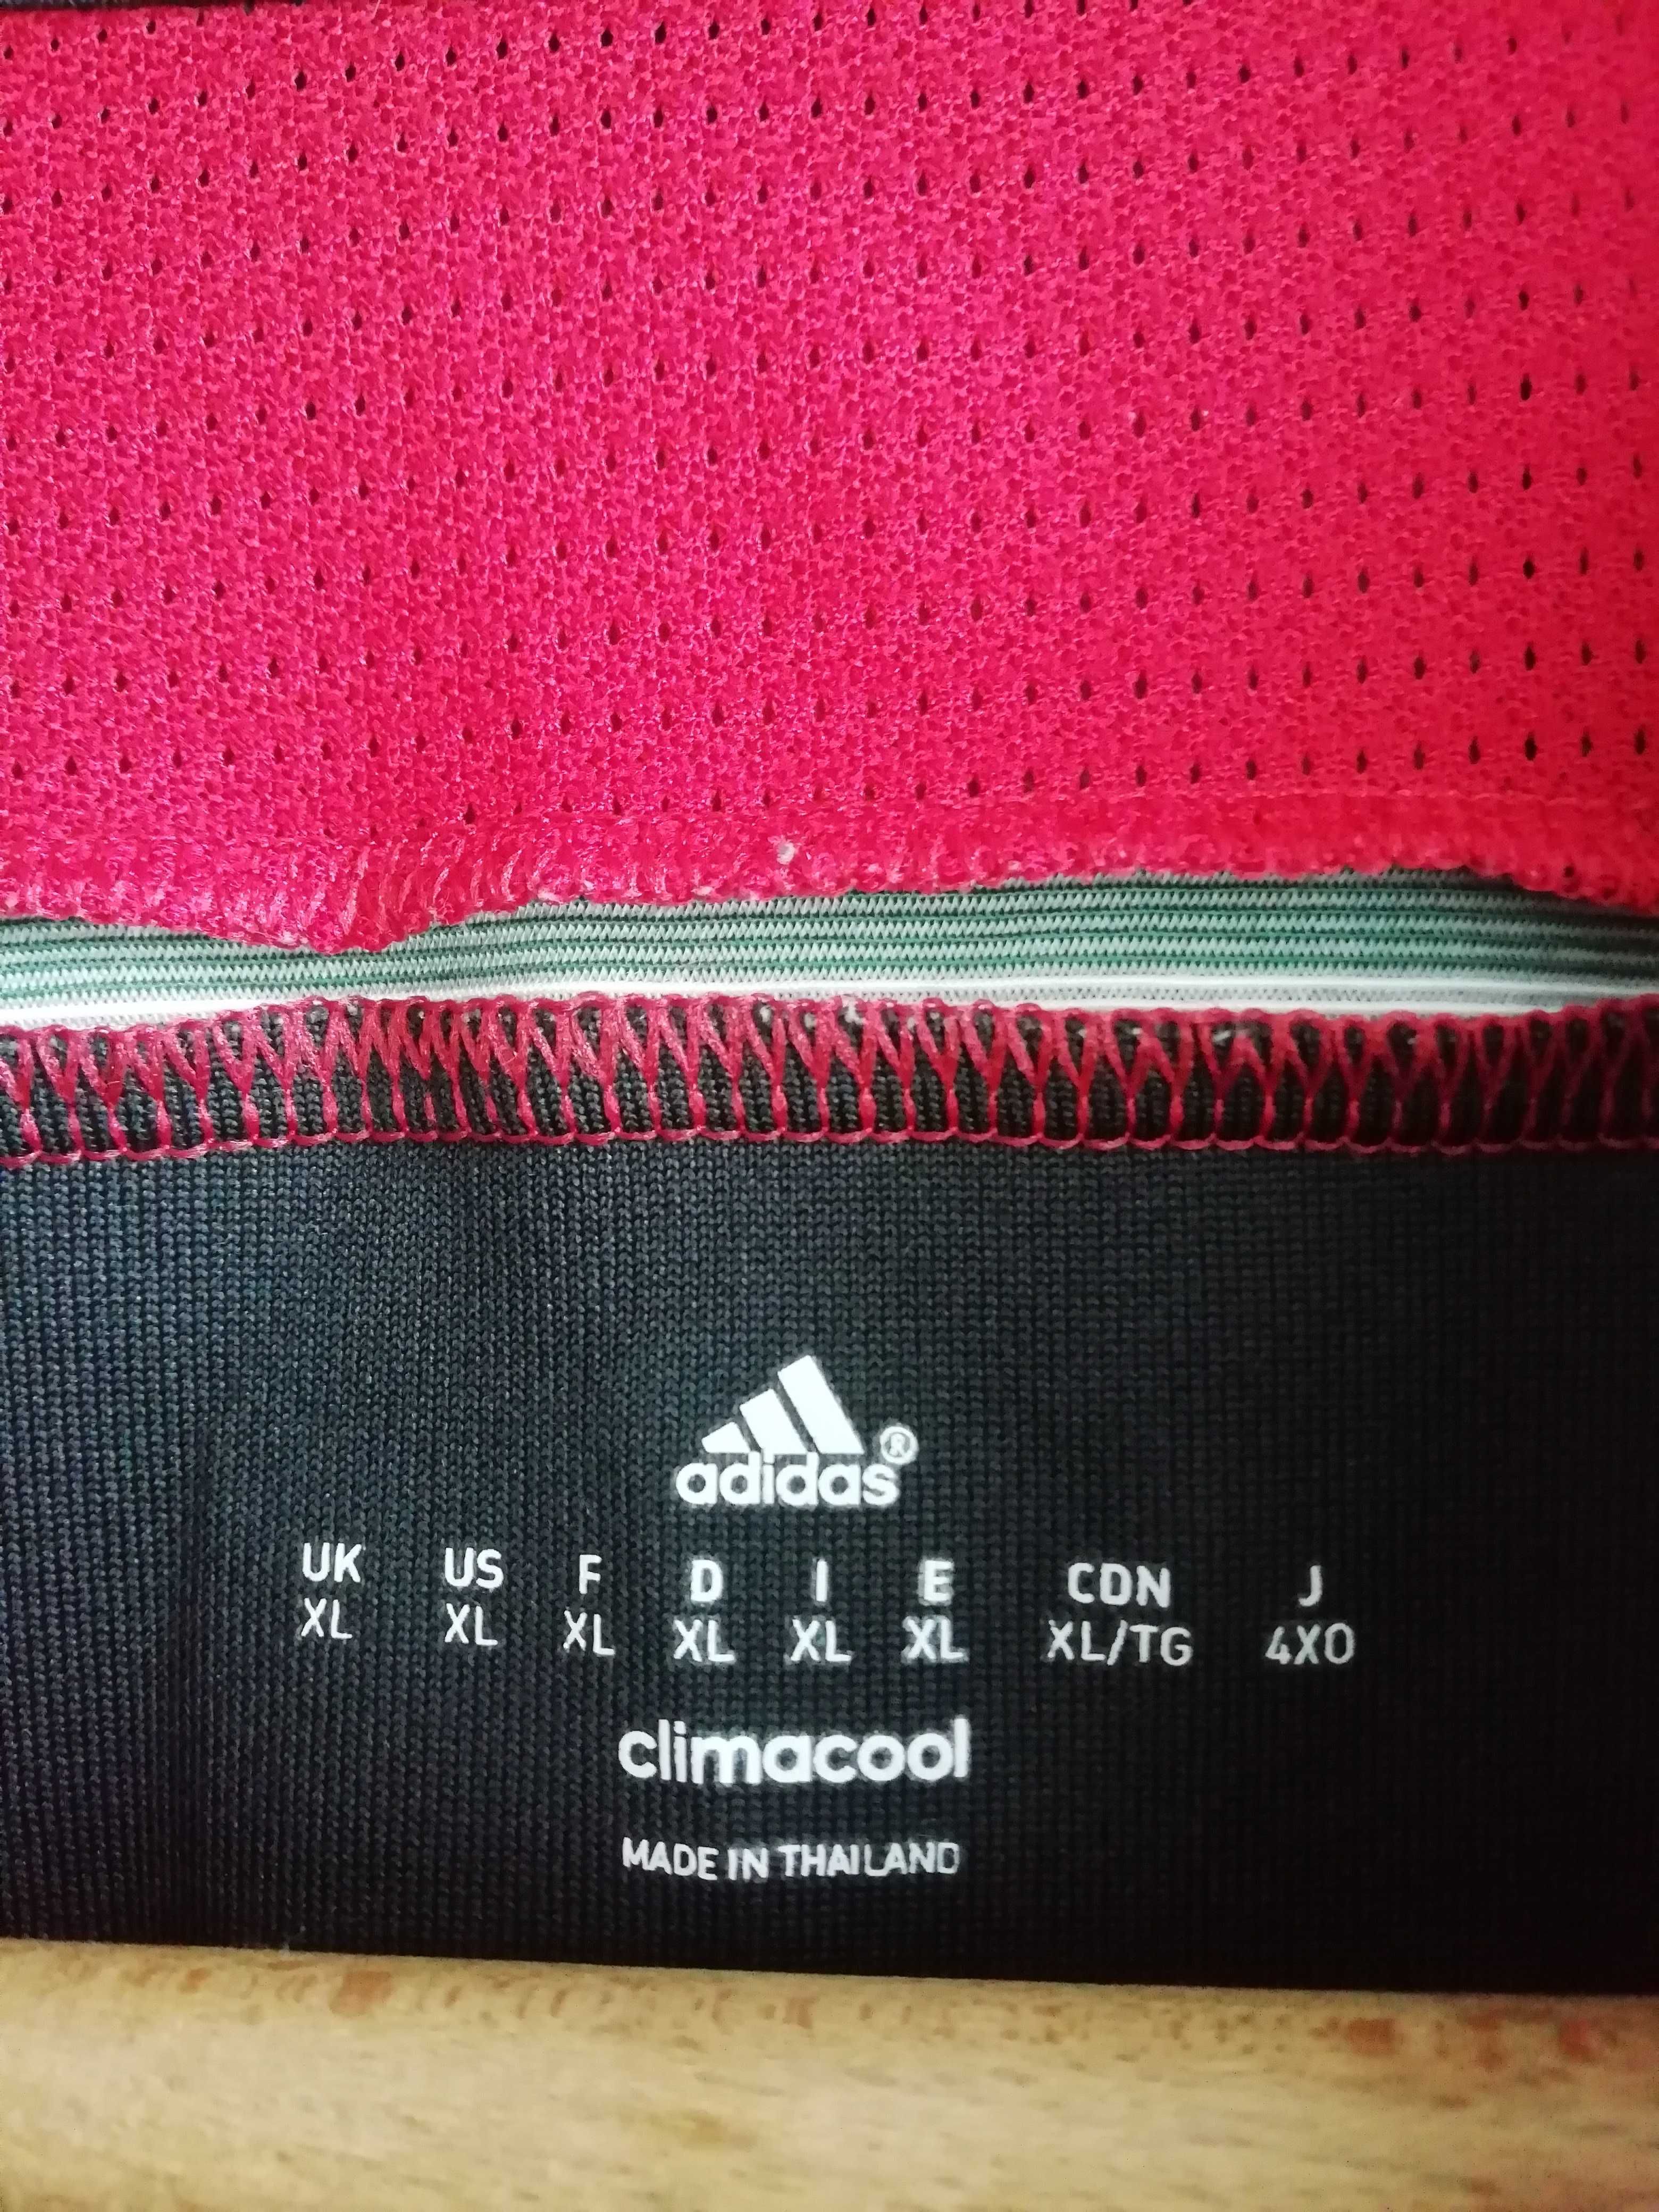 AC Milan Adidas 2014/2015 XL оригинална тениска фланелка Милан